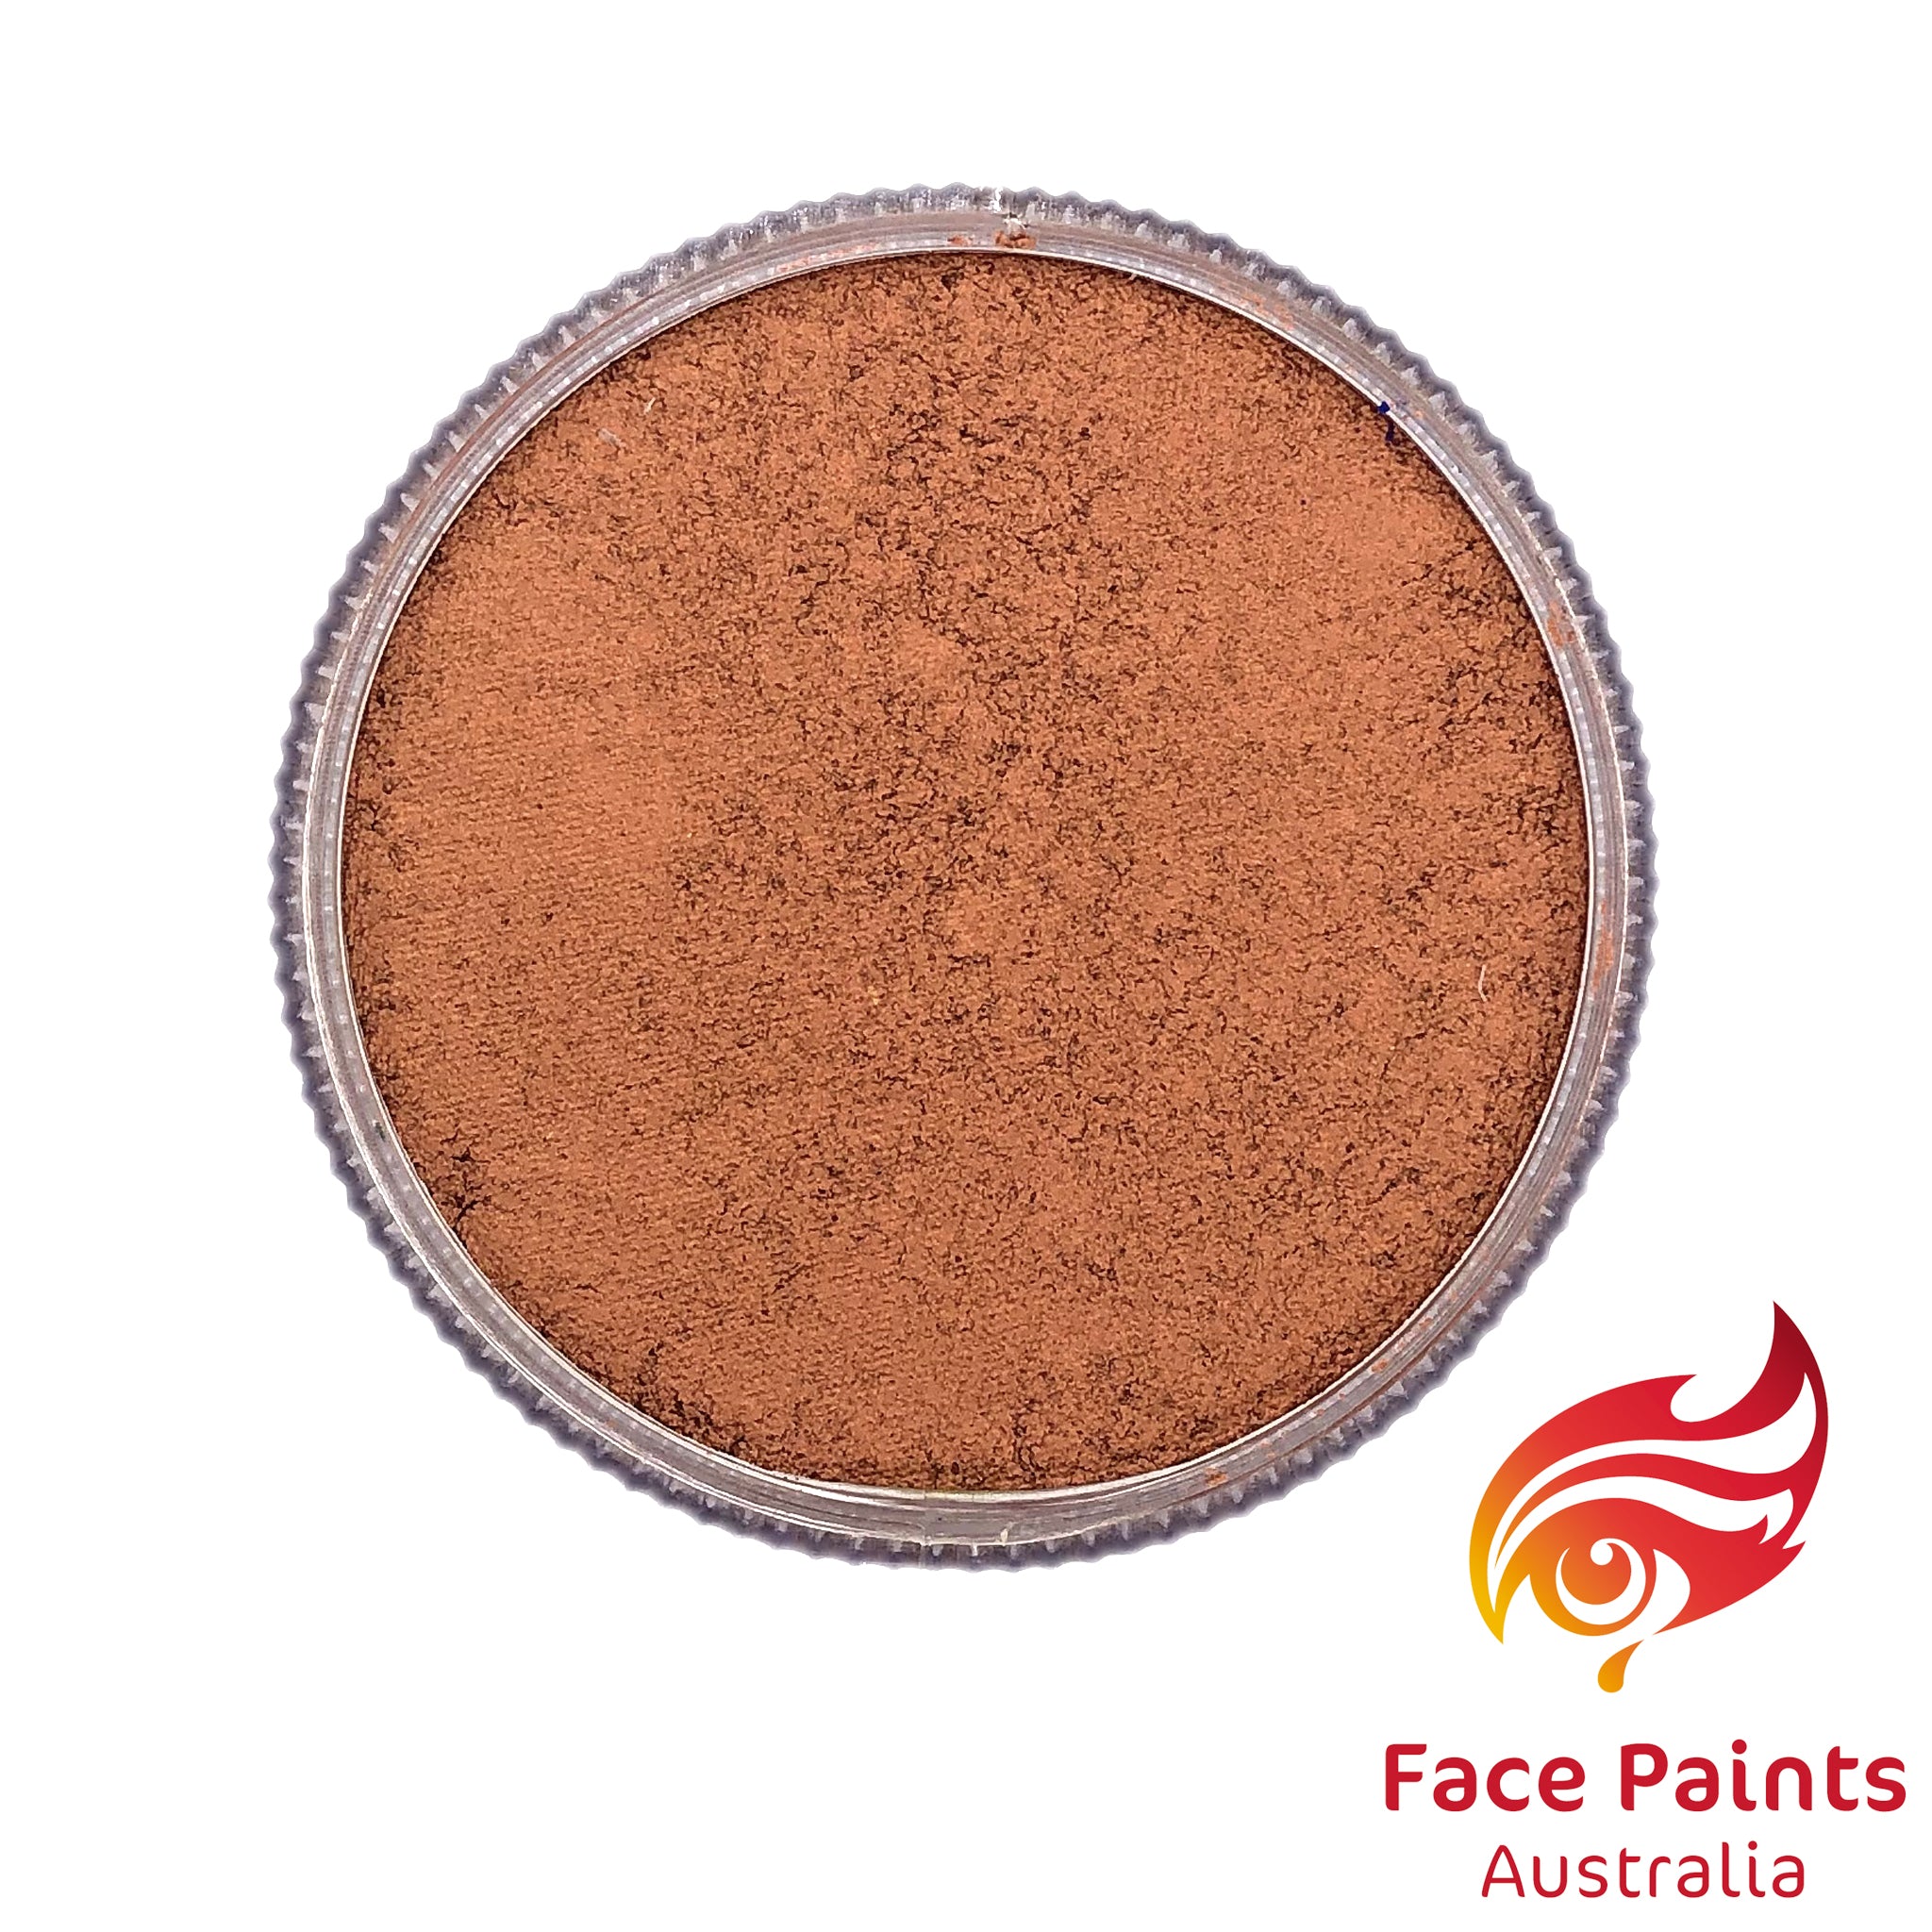 Face Paints Australia Metalic 30g Copper